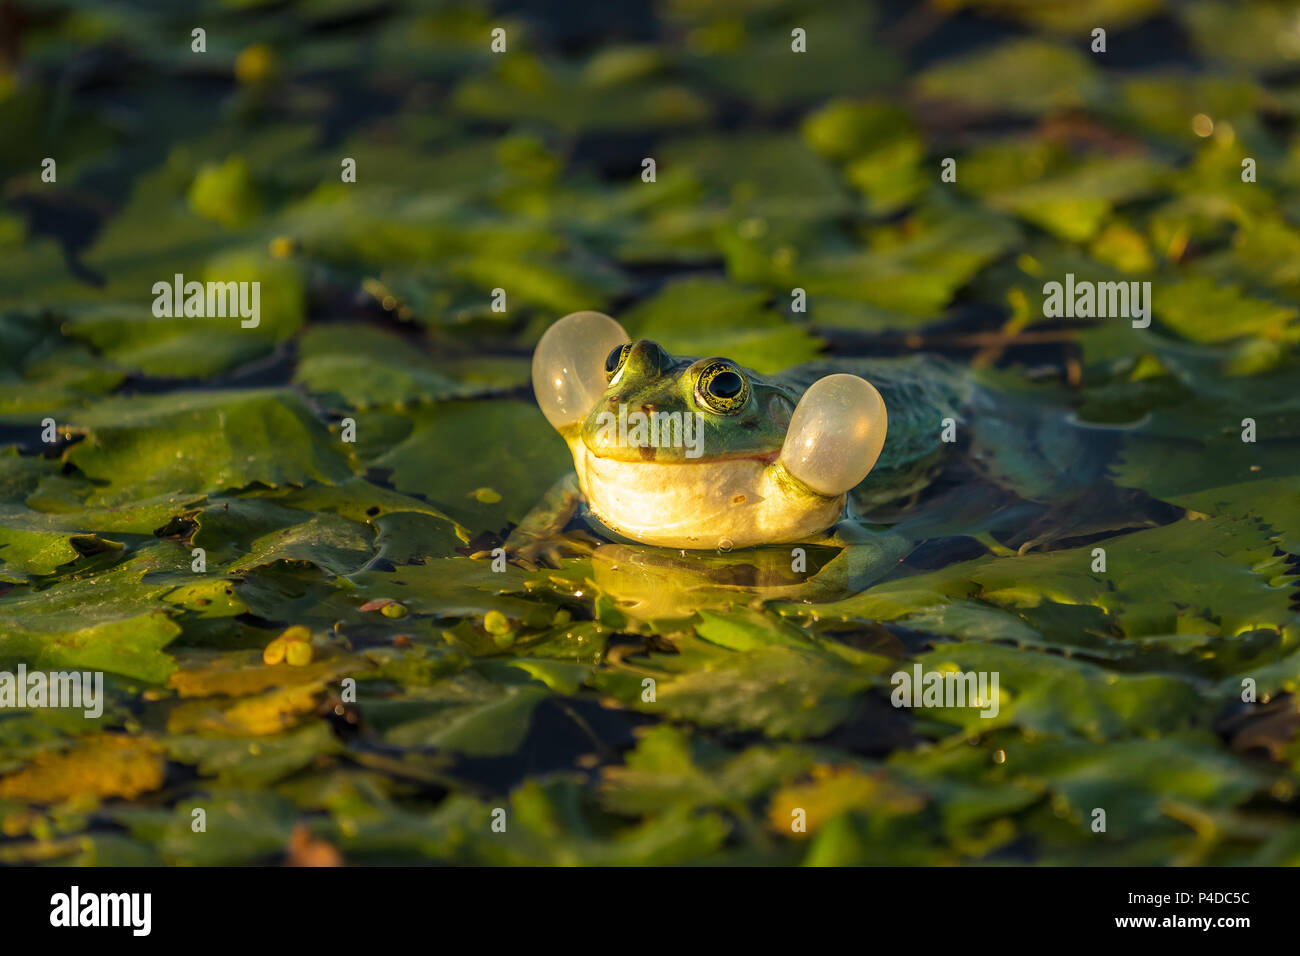 Die gemeinsame Green Frog (See Frosch oder Wasser Frosch) im Wasser in das Donau Delta. Closeup Frosch Fotografie bei Sonnenaufgang Stockfoto